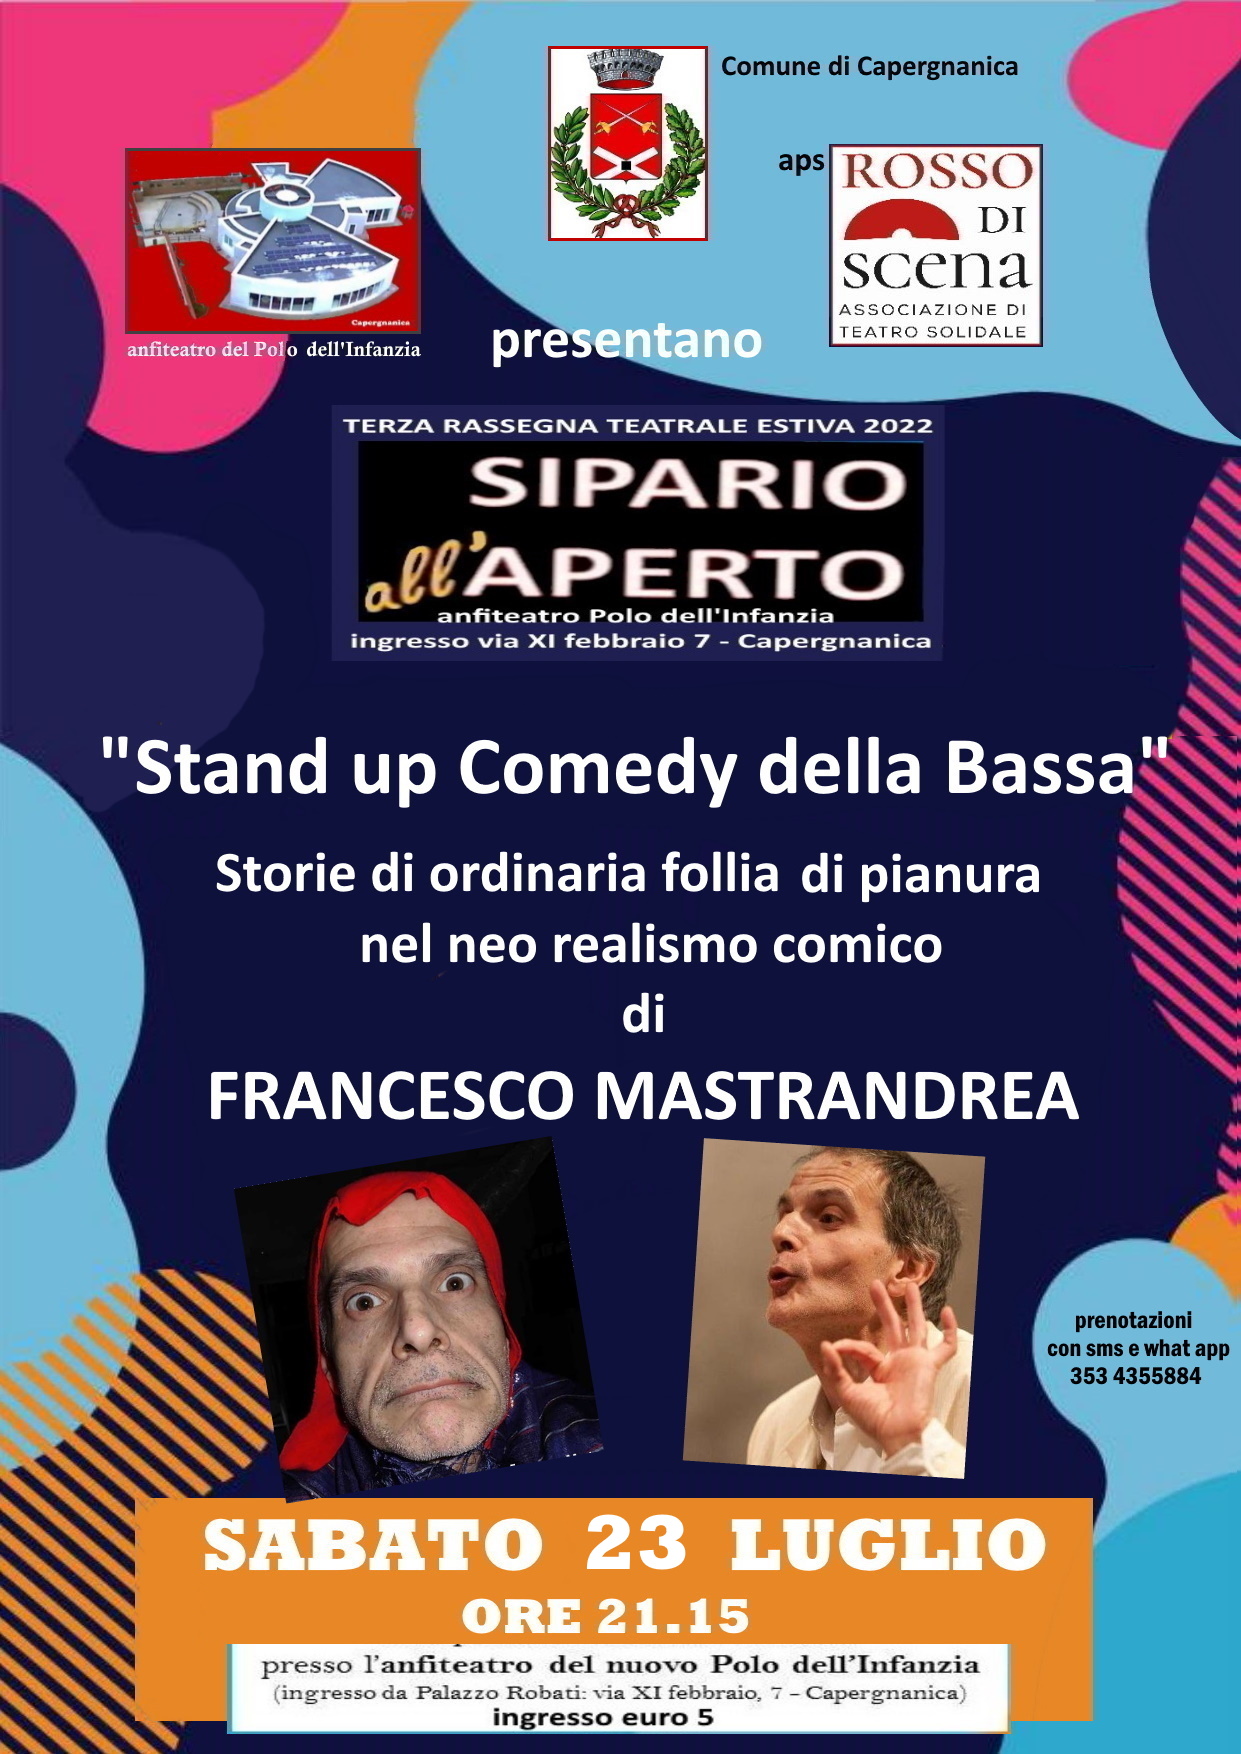 Il comico pavese Francesco Mastrandrea a Capergnanica sabato 23 luglio alle 21.15  con le sue storie di ordinaria follia della bassa.